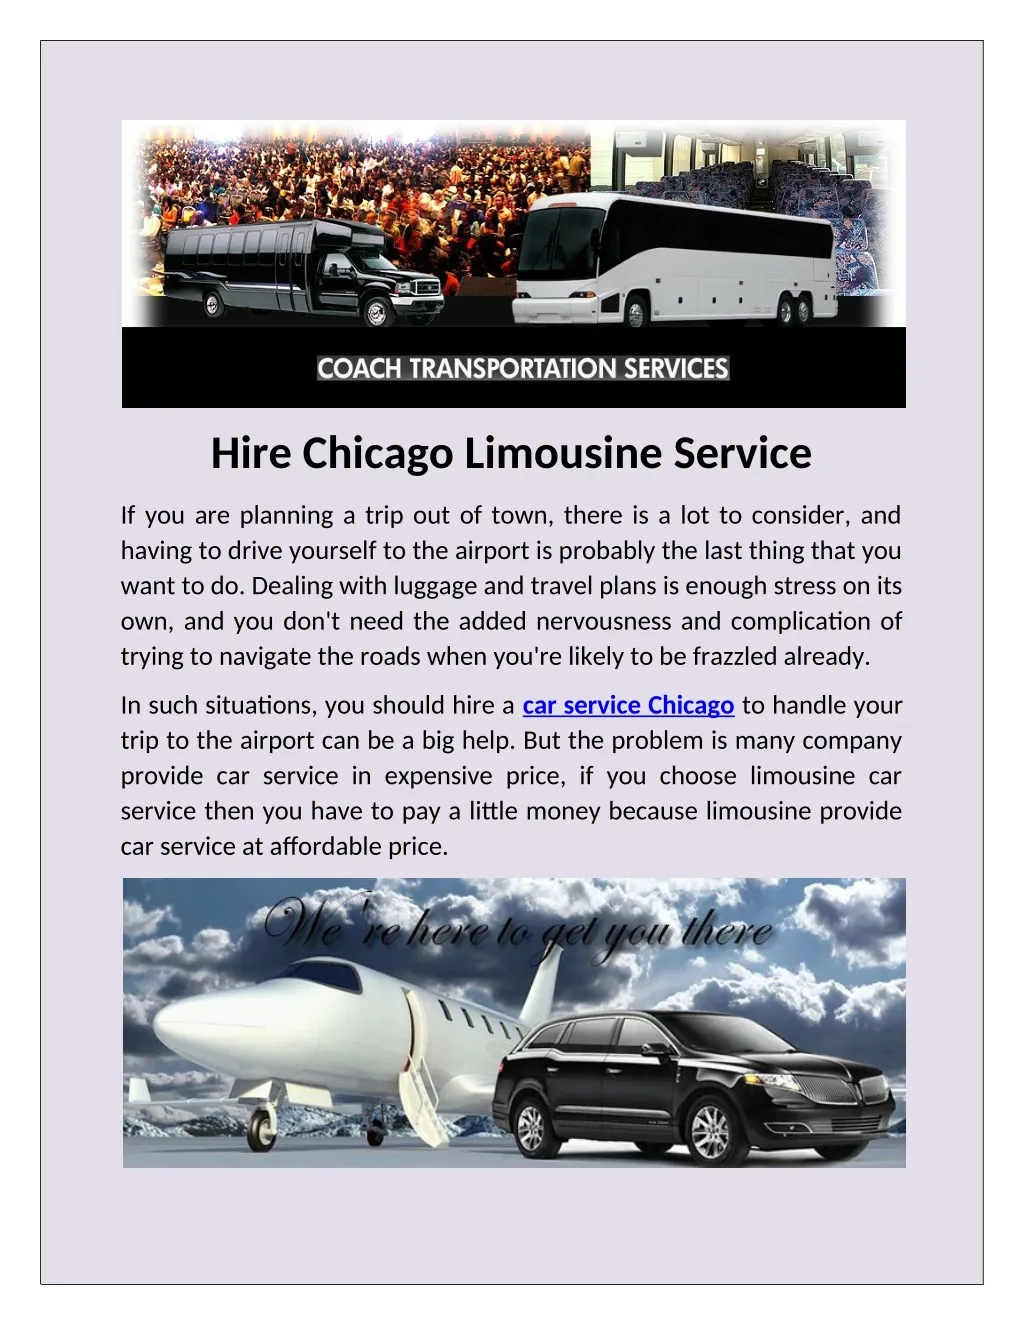 hire chicago limousine service